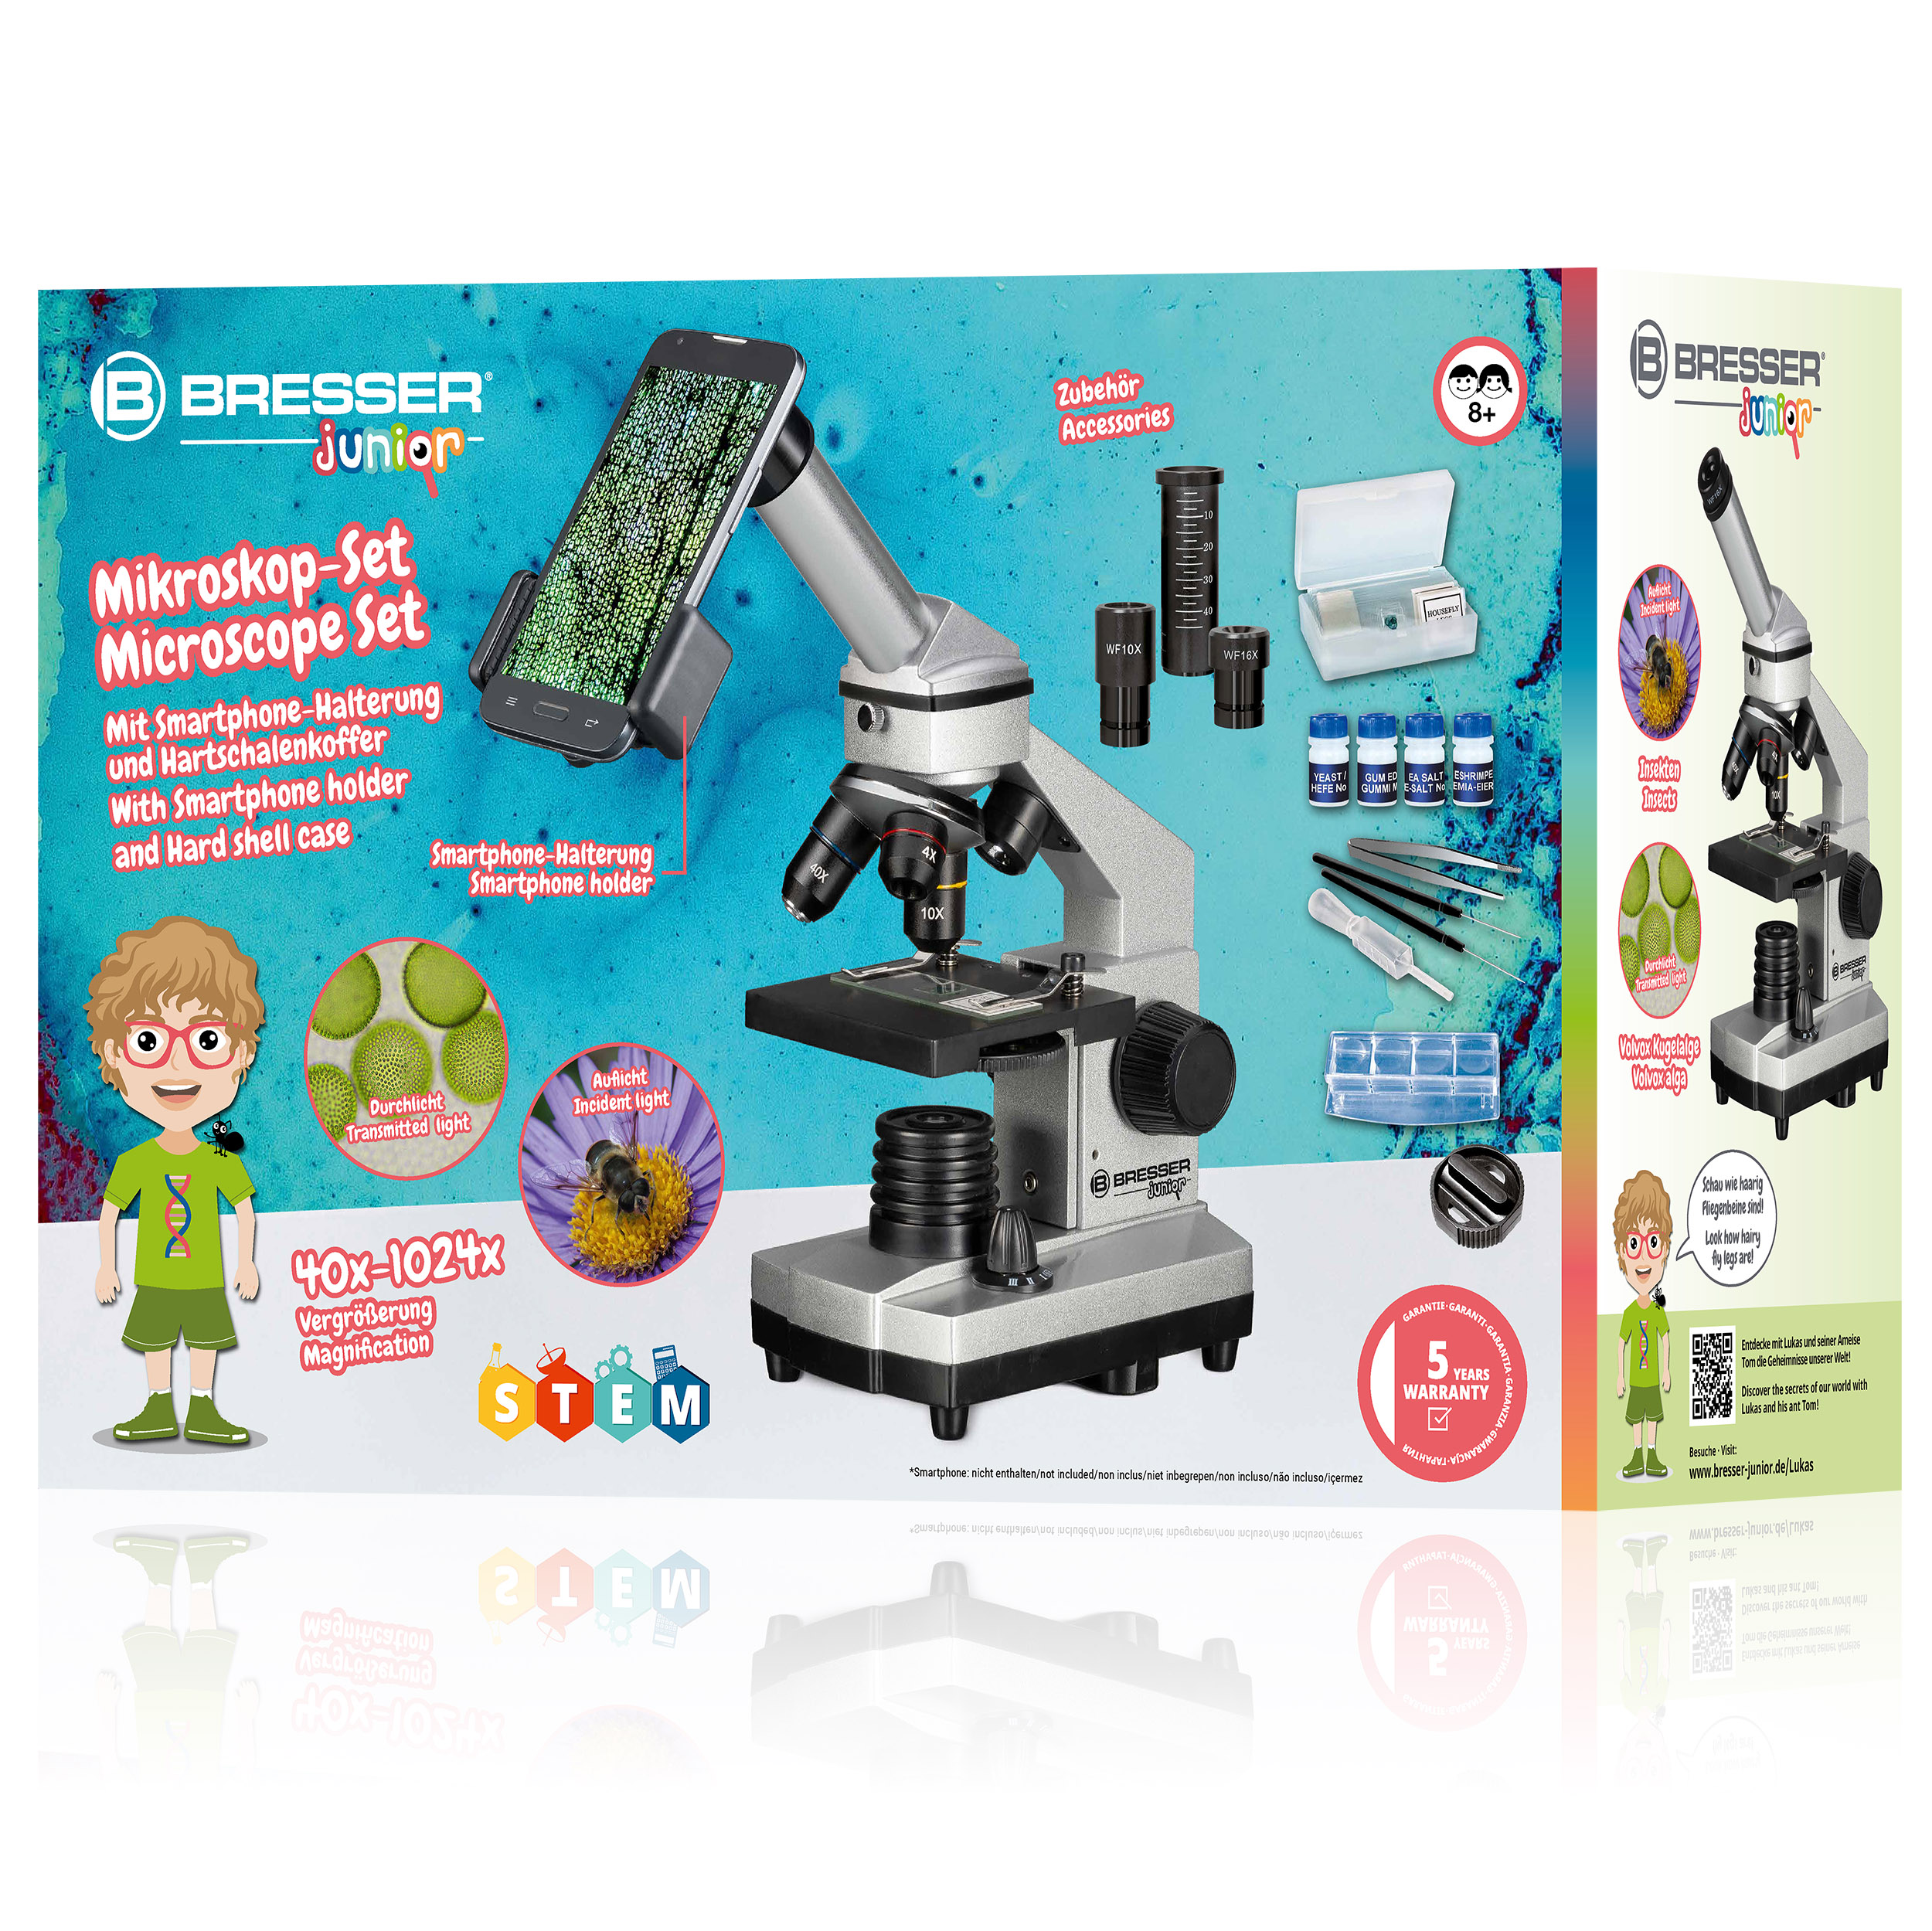 Microscope BRESSER JUNIOR Biolux CA 40x-1024x